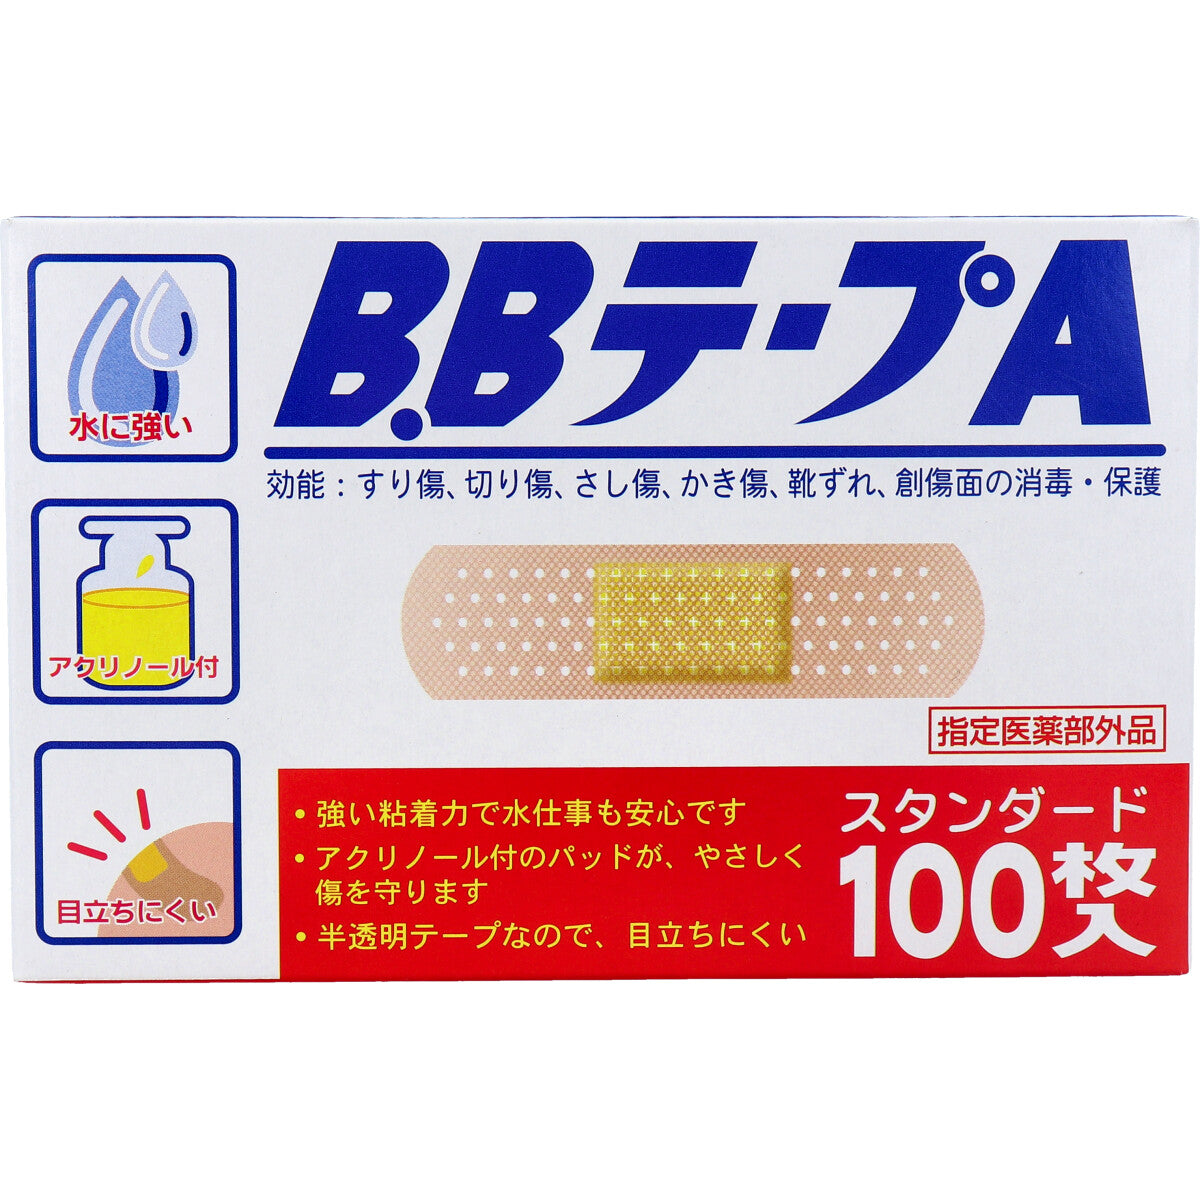 日本BB TAPE A 絆創貼